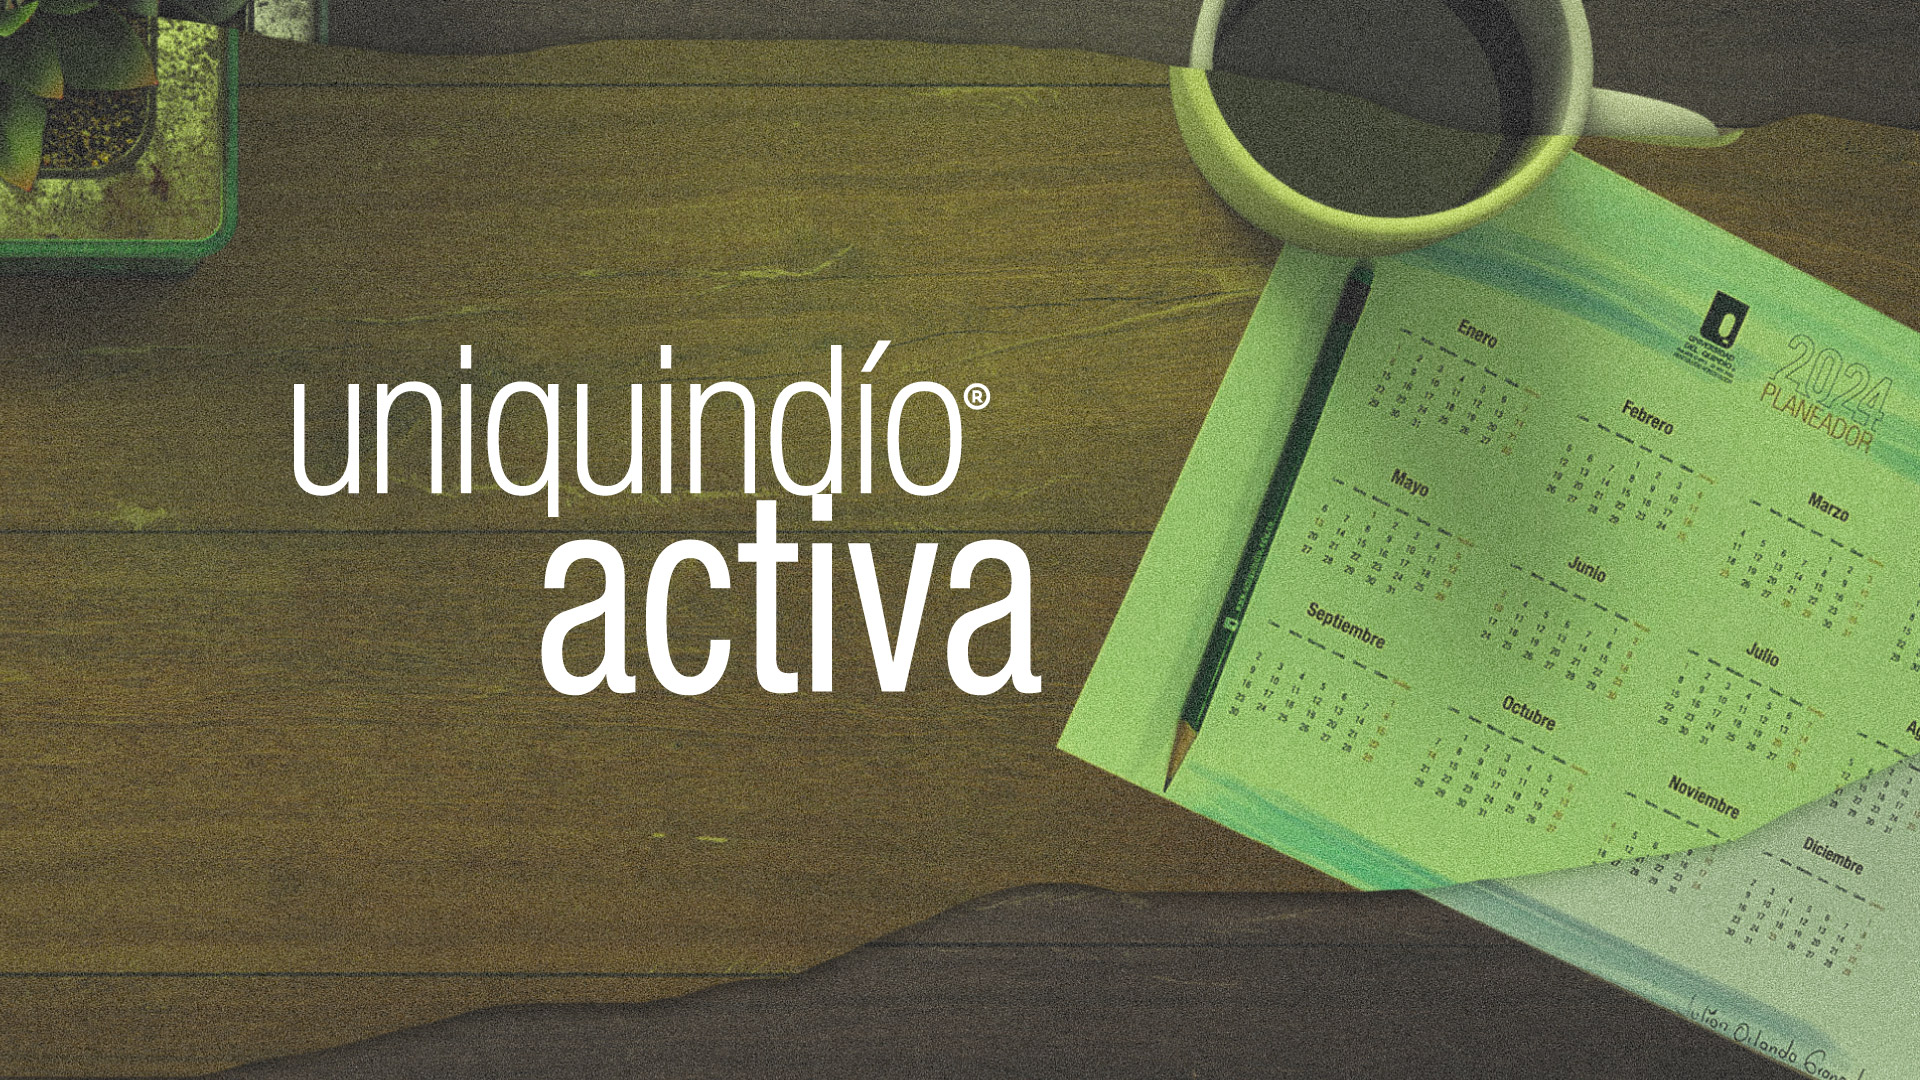 Uniquindío activa: conoce la agenda de la Universidad del Quindío